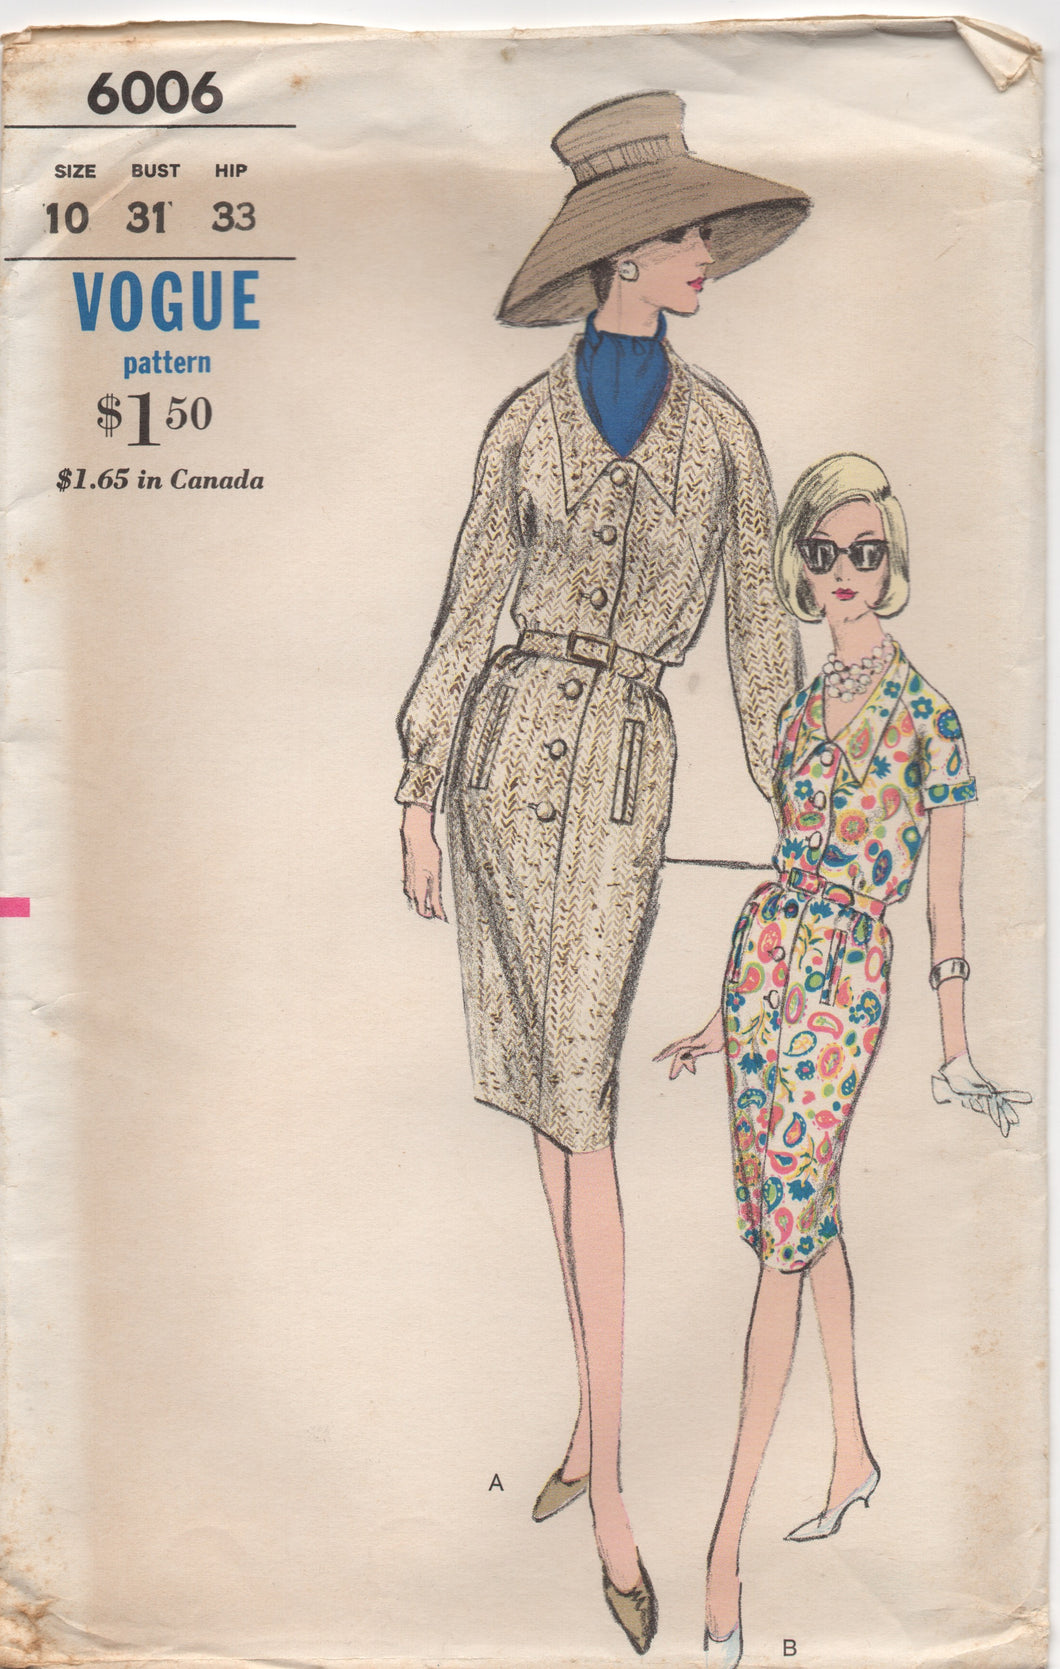 1960's Vogue Shirtwaist Dress with Pockets - Bust 31